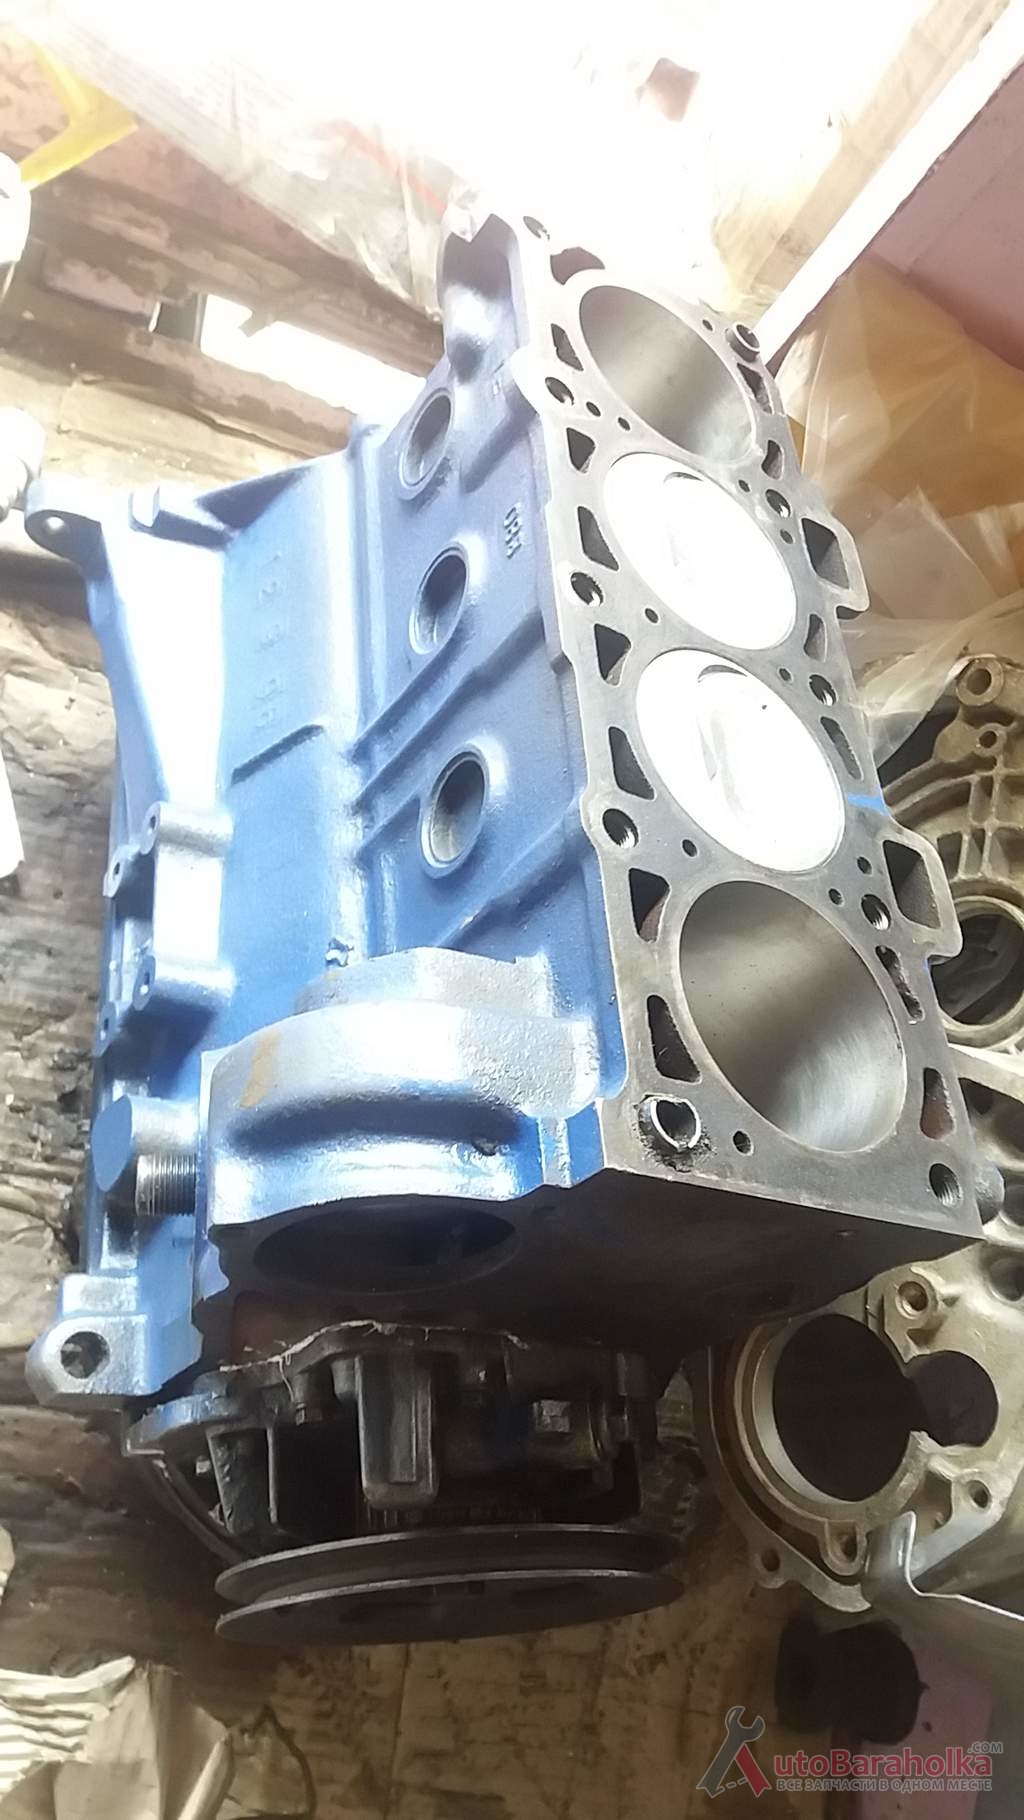 Продам Низ мотора ВАЗ 2101 2121 21213 2103 2106 из Польши стандарт и после кап ремонта. Гарантия Херсон